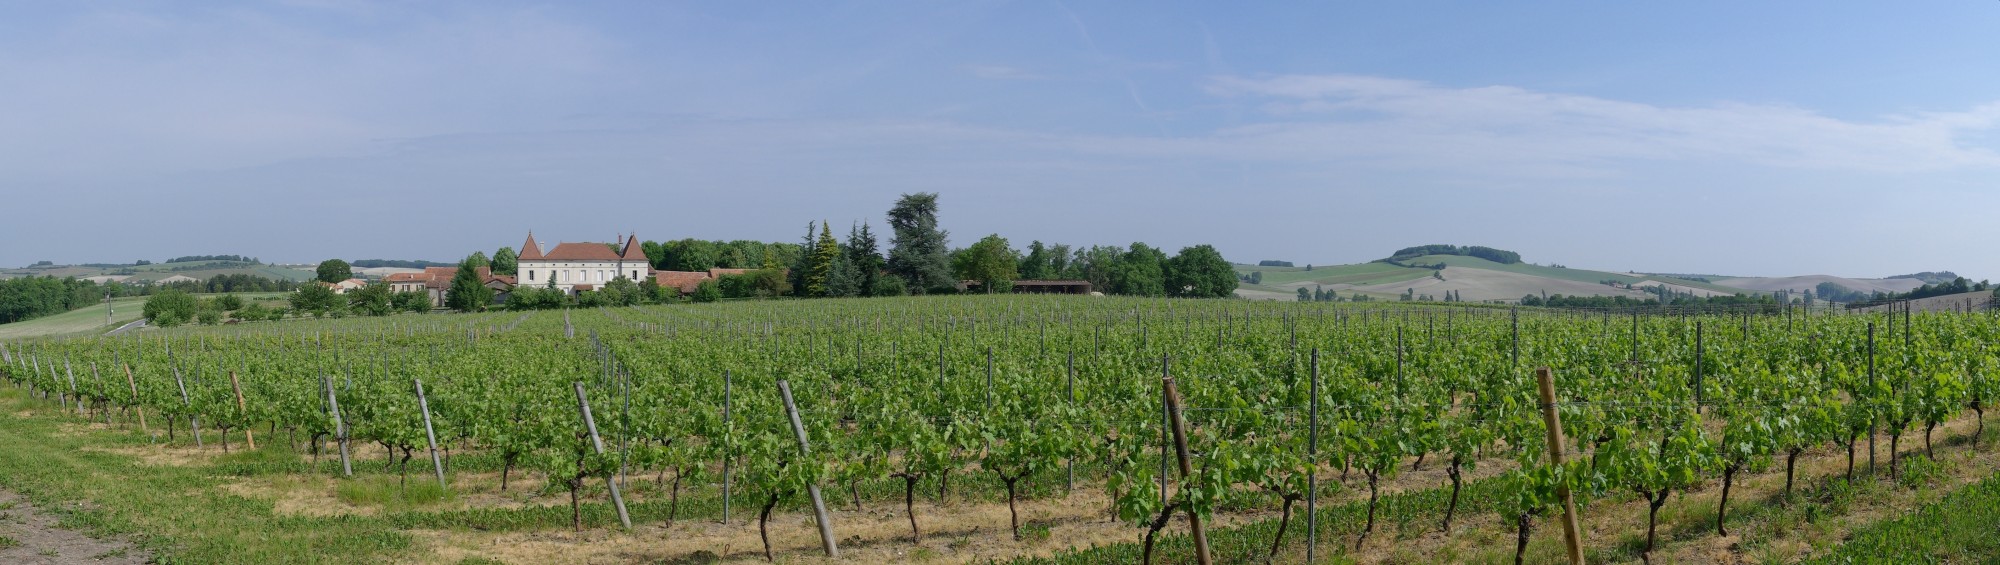 Domaine viticole Chpgne-Vigny 2011